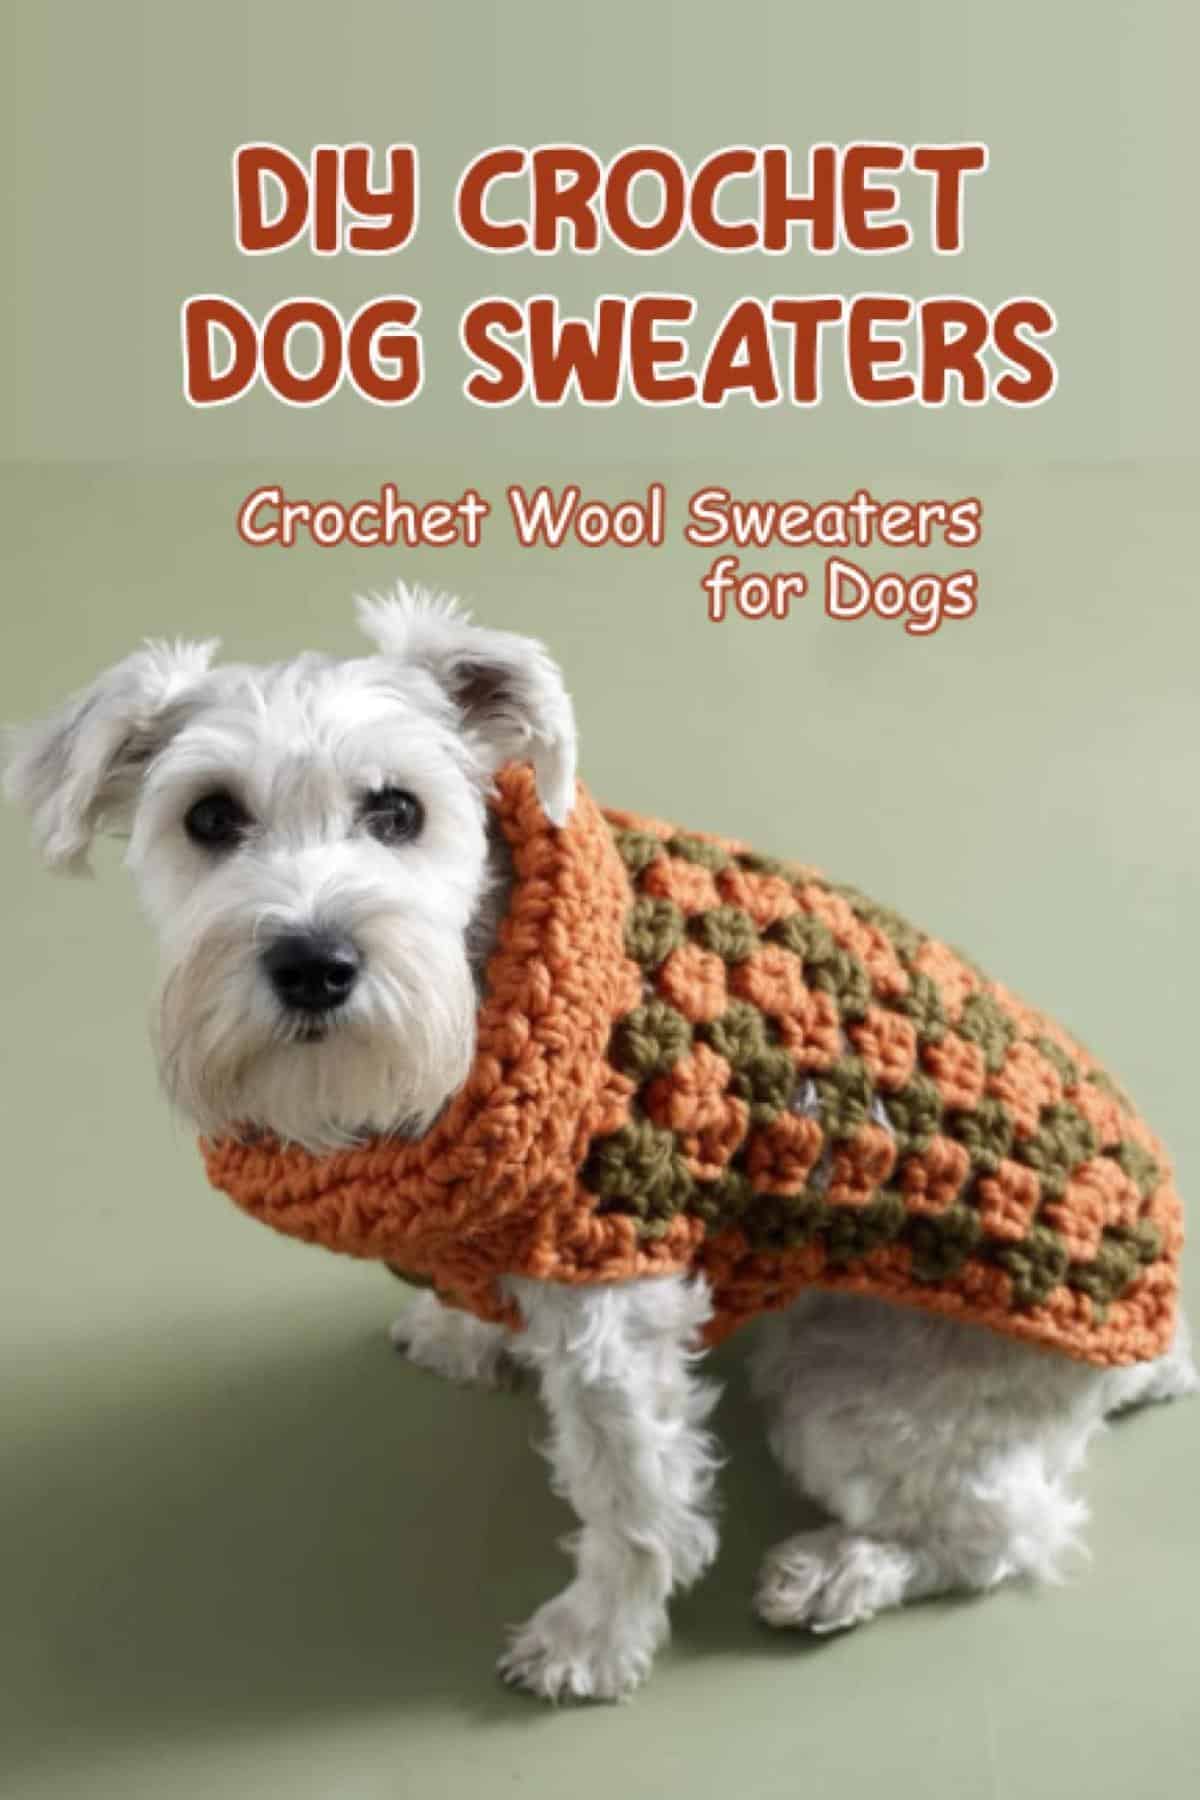 DIY Crochet Dog Sweaters: Crochet Wool Sweaters for Dogs